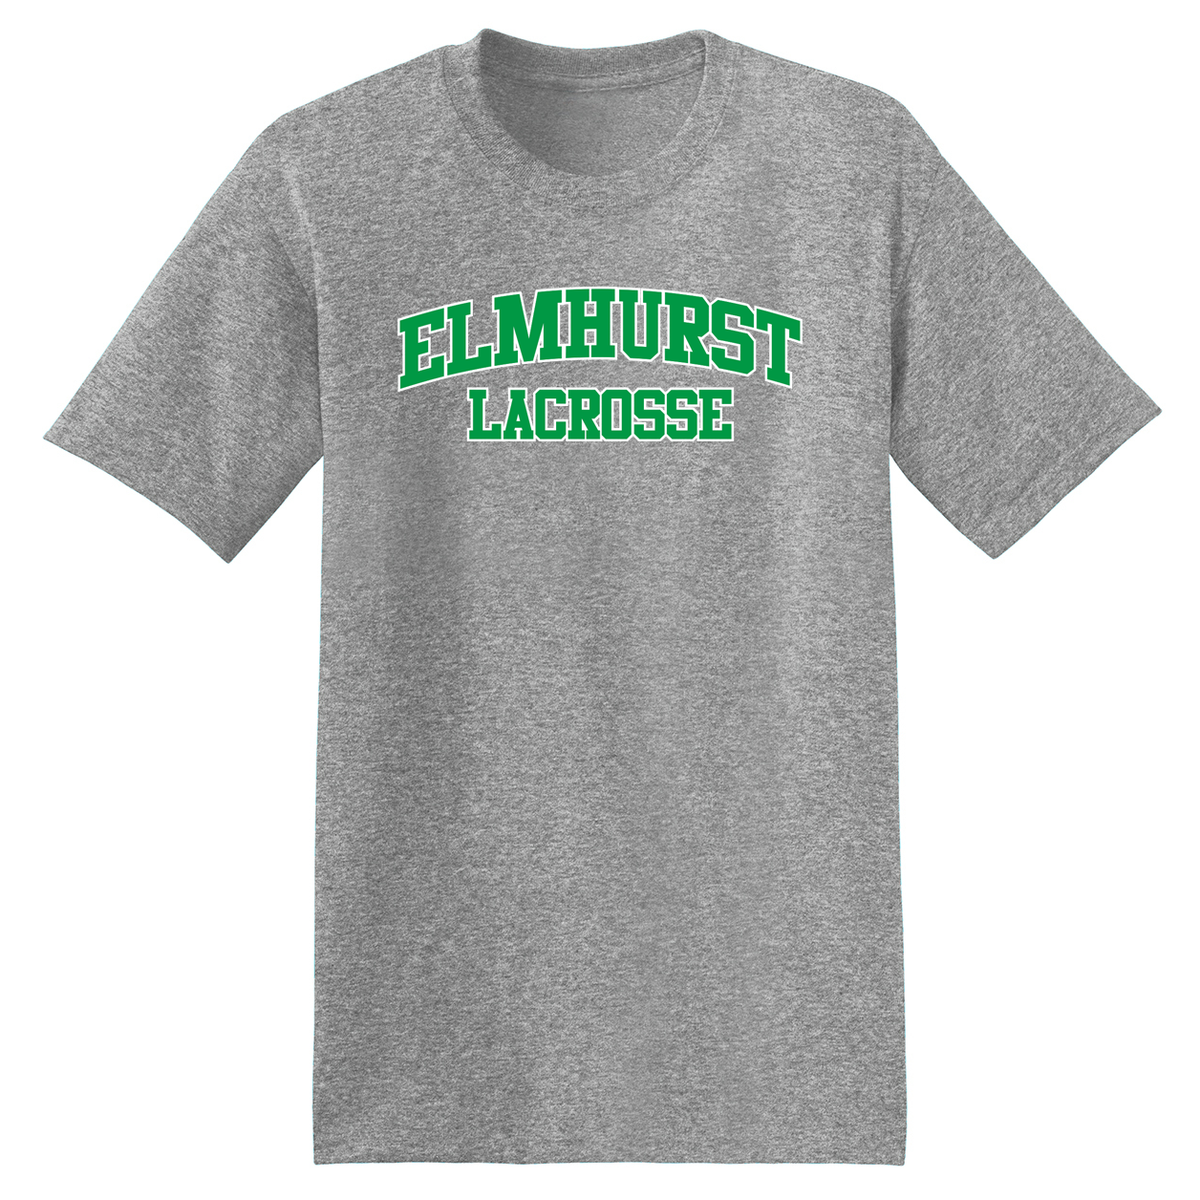 Elmhurst Lacrosse T-Shirt